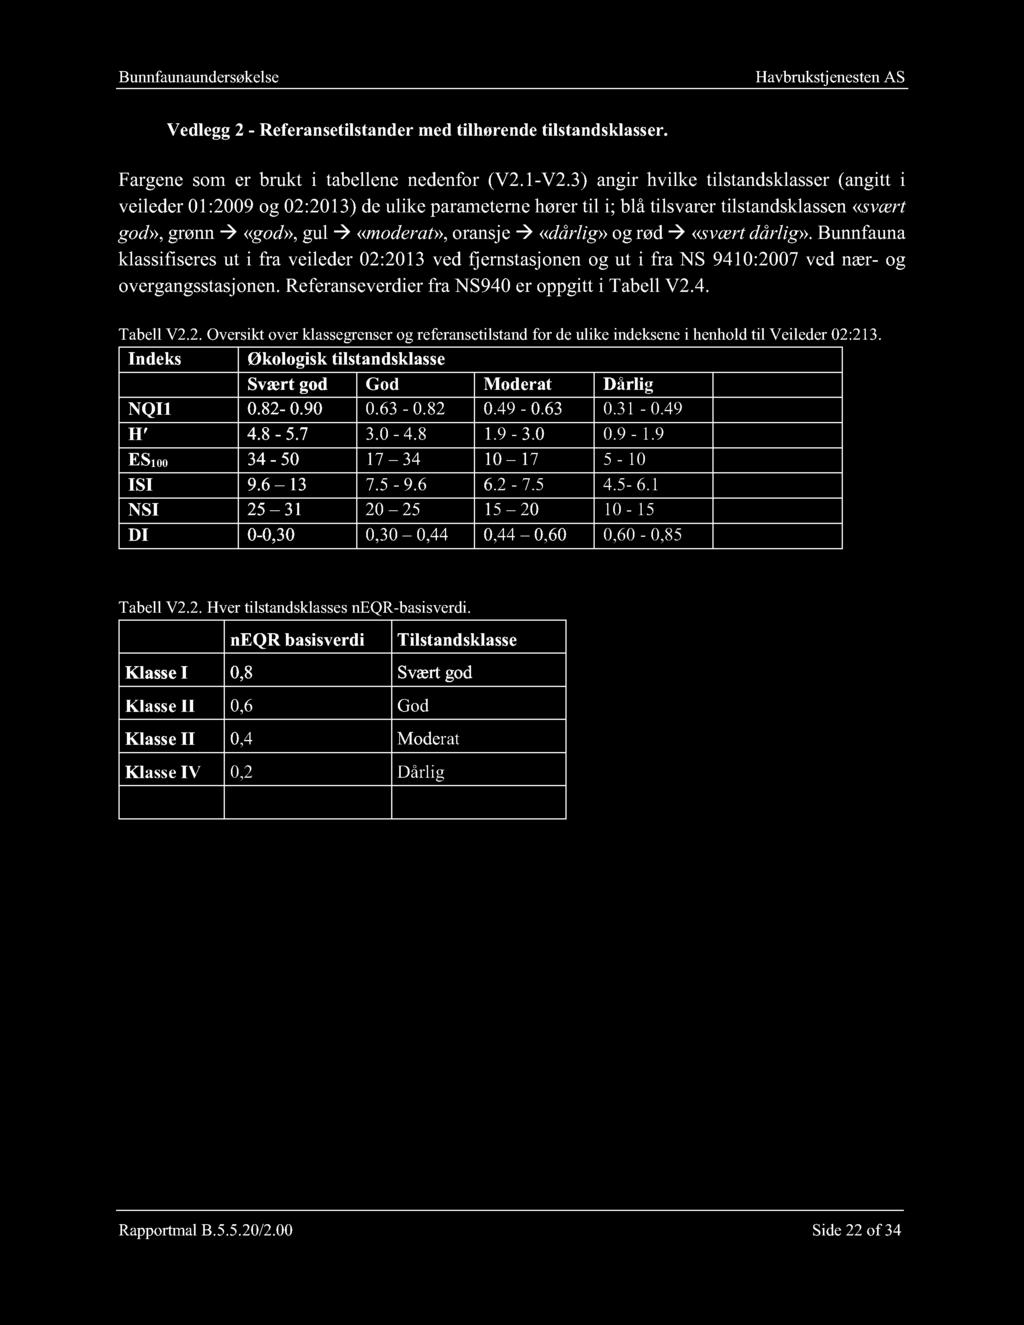 rød «svært dårlig». Bunnfauna klassifiseres ut i fra veileder 02:2013 ved fjernstasjonen og u t i fra NS 9410:2007 ved nær - og overgangsstasjonen. Referanseverdier fra NS940 er oppgitt i Tabell V2.